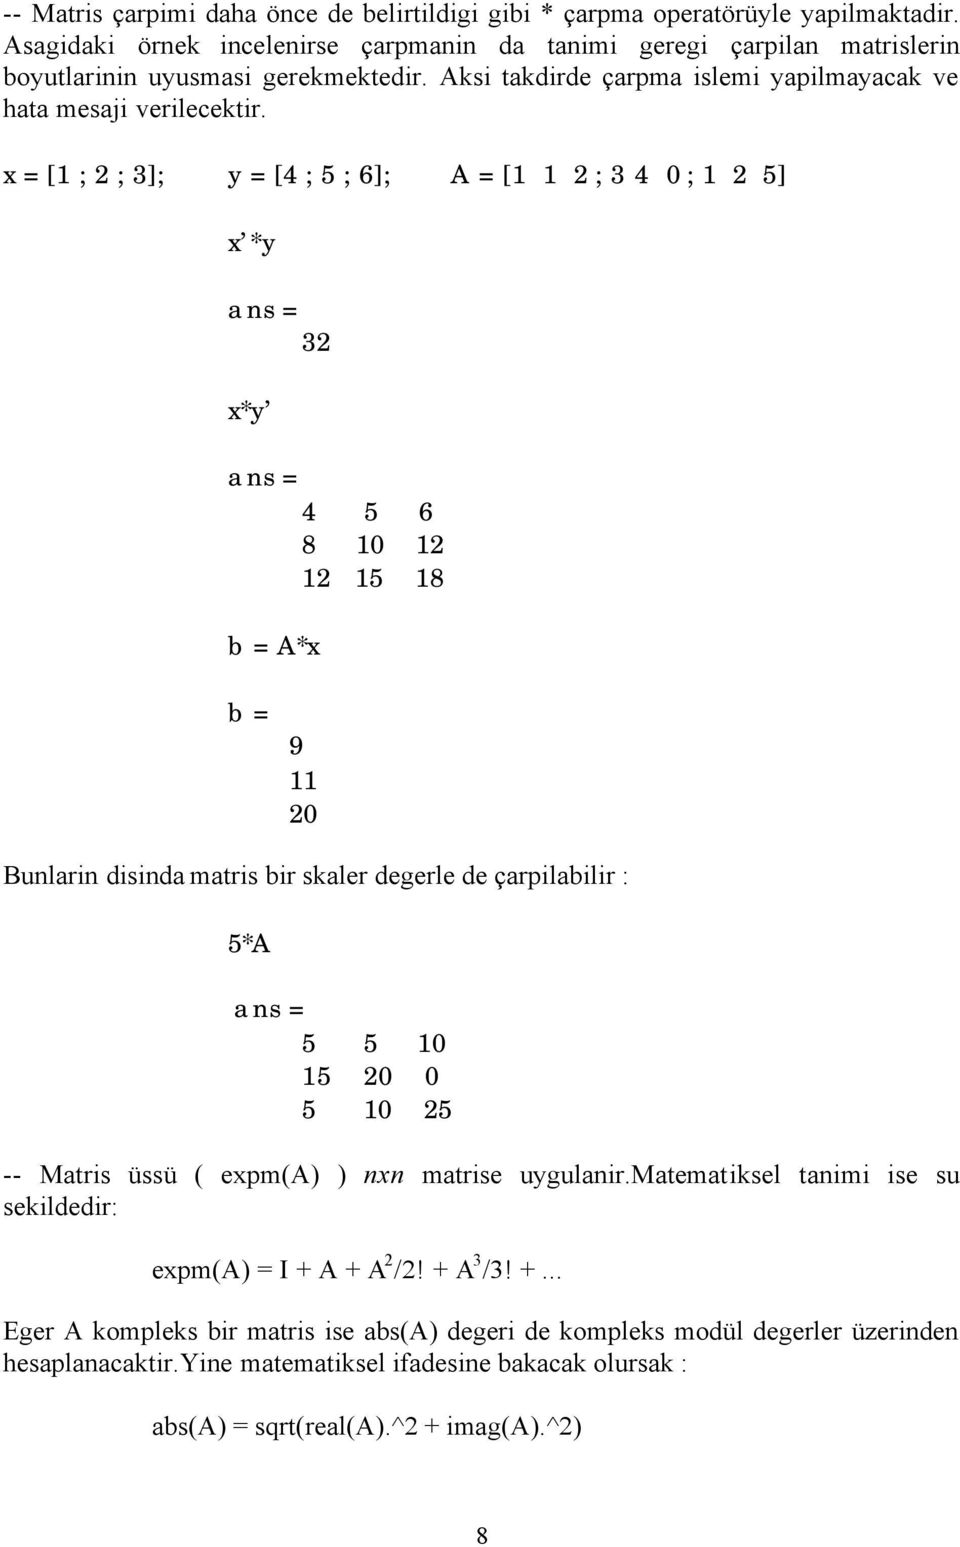 x = [1 ; 2 ; 3]; y = [4 ; 5 ; 6]; A = [1 1 2 ; 3 4 0 ; 1 2 5] x *y ans = 32 x*y ans = 4 5 6 8 10 12 12 15 18 b = A*x b = 9 11 20 Bunlarin disinda matris bir skaler degerle de çarpilabilir : 5*A ans =